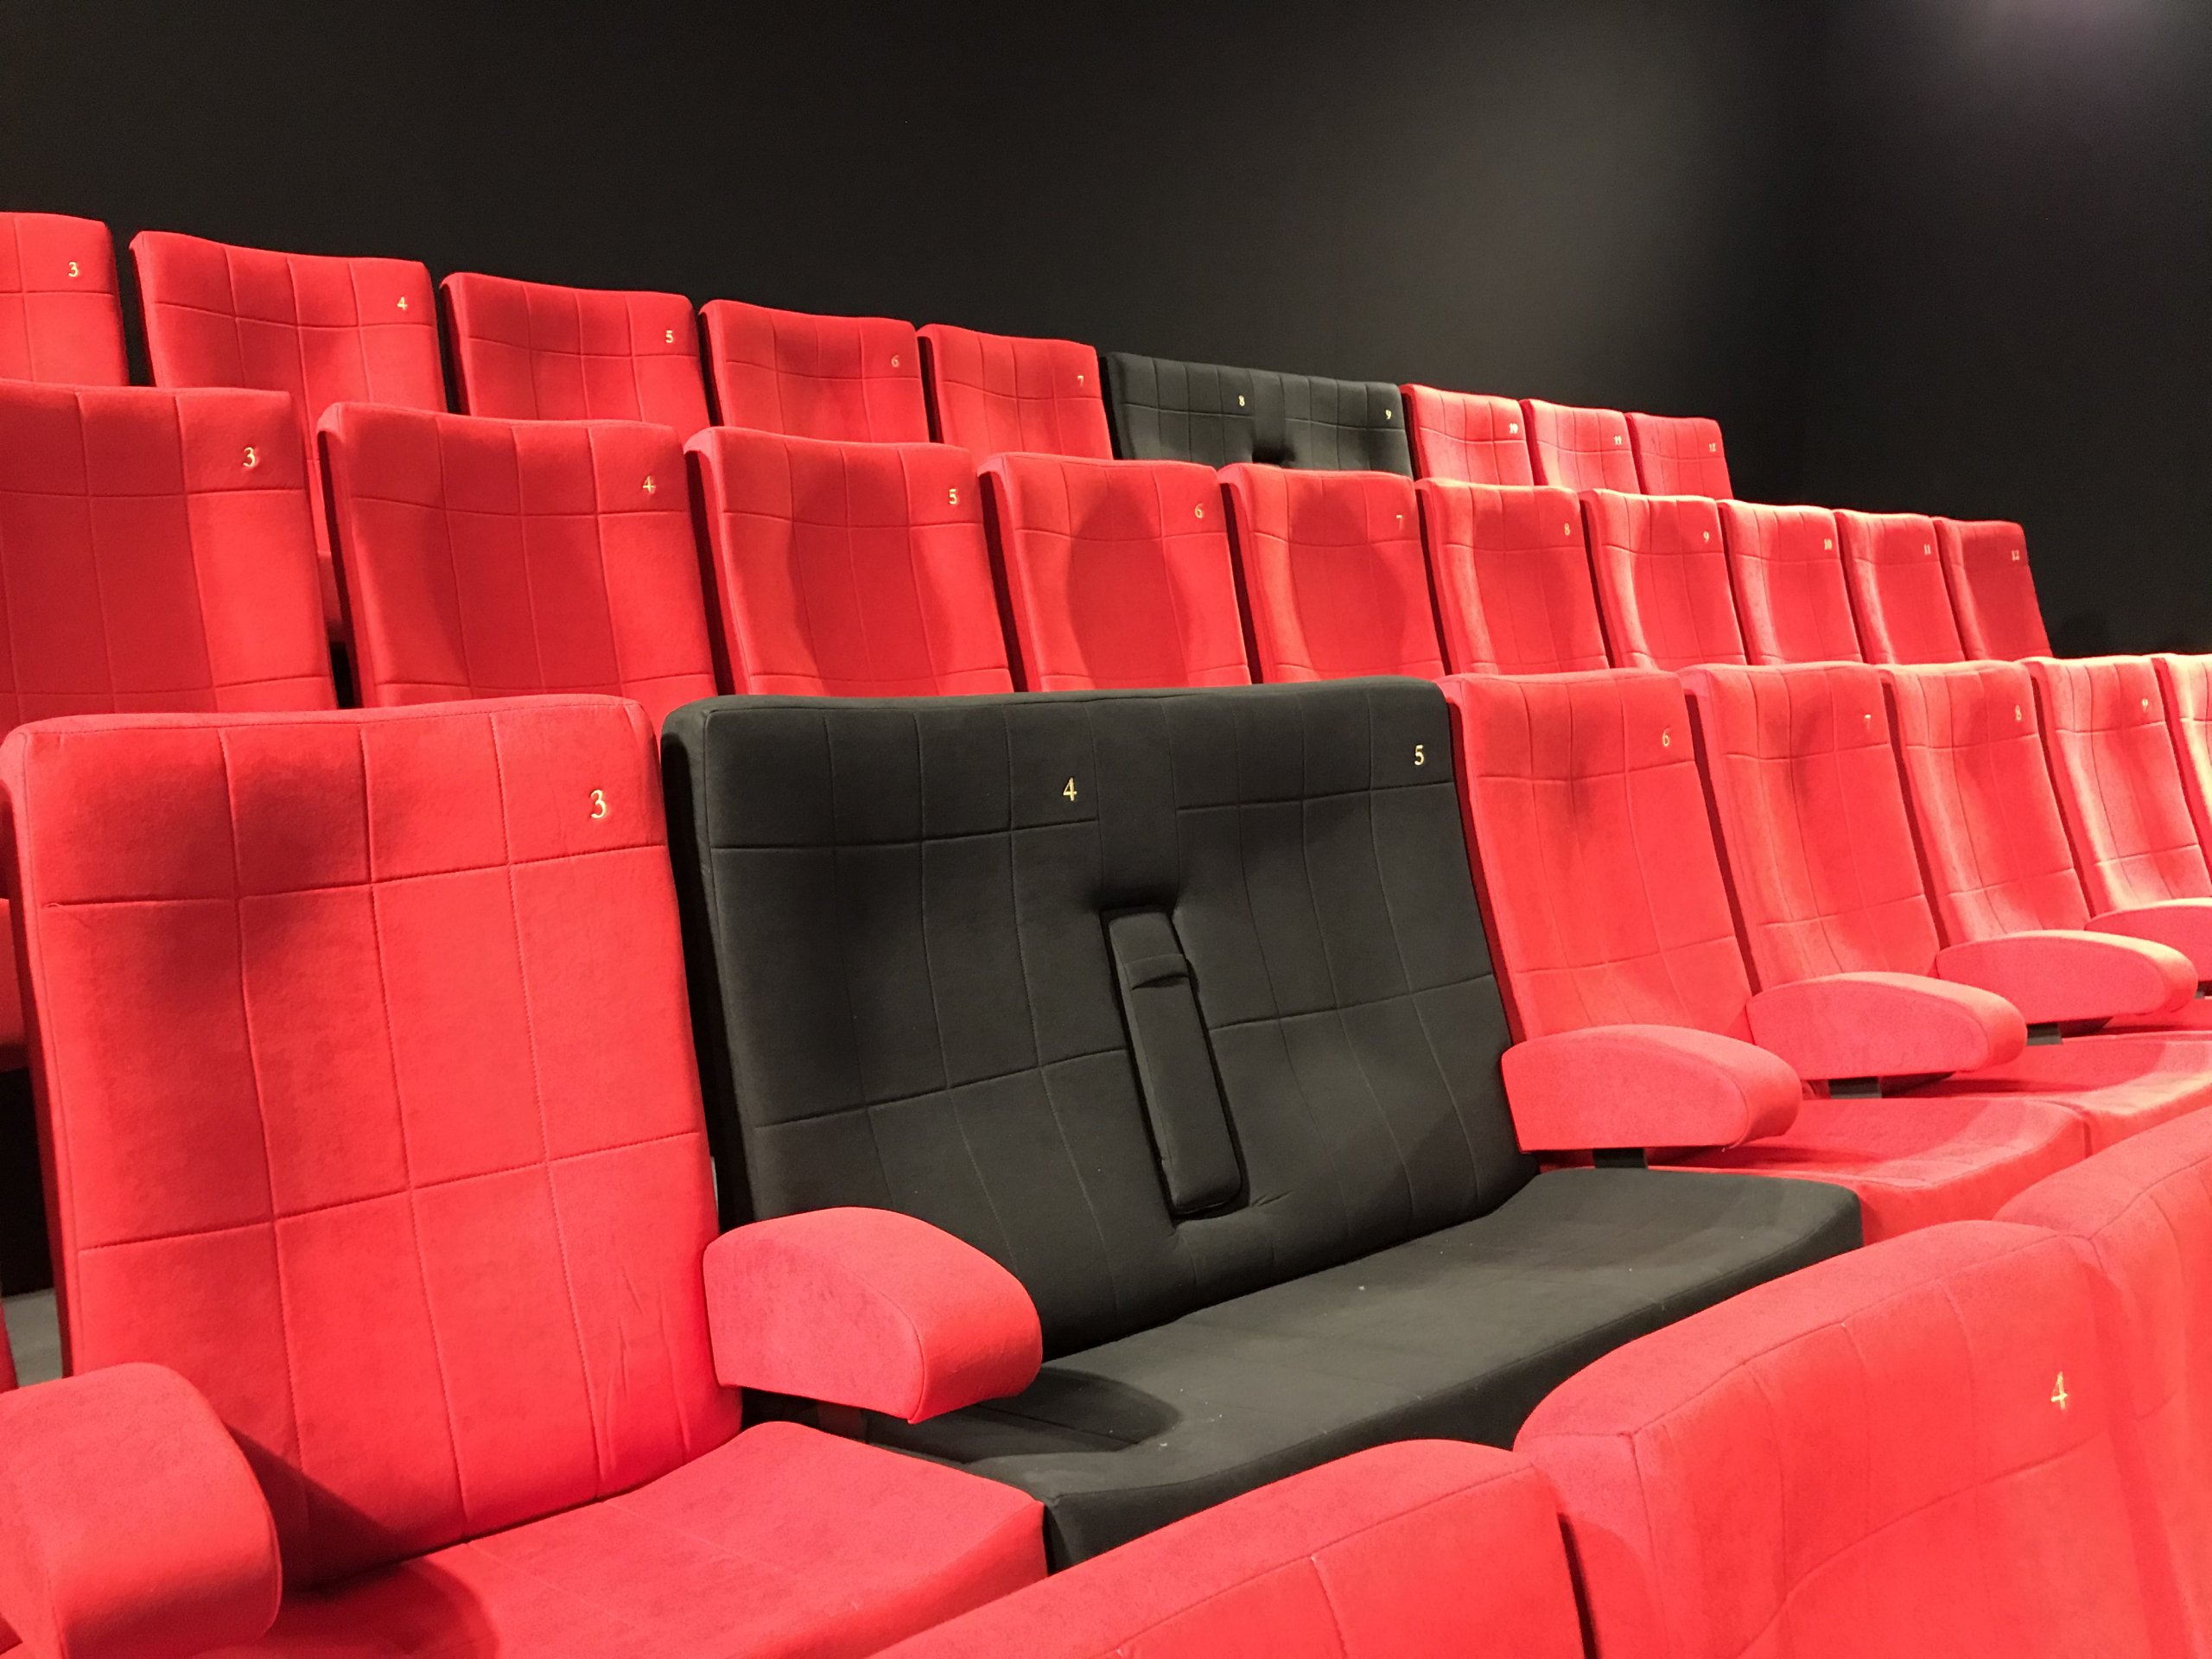 Kleslo - fauteuil club- Leader de fabrication de fauteuils cinéma, théâtre ... cinéma Cinéma Emeraude La richardais V4